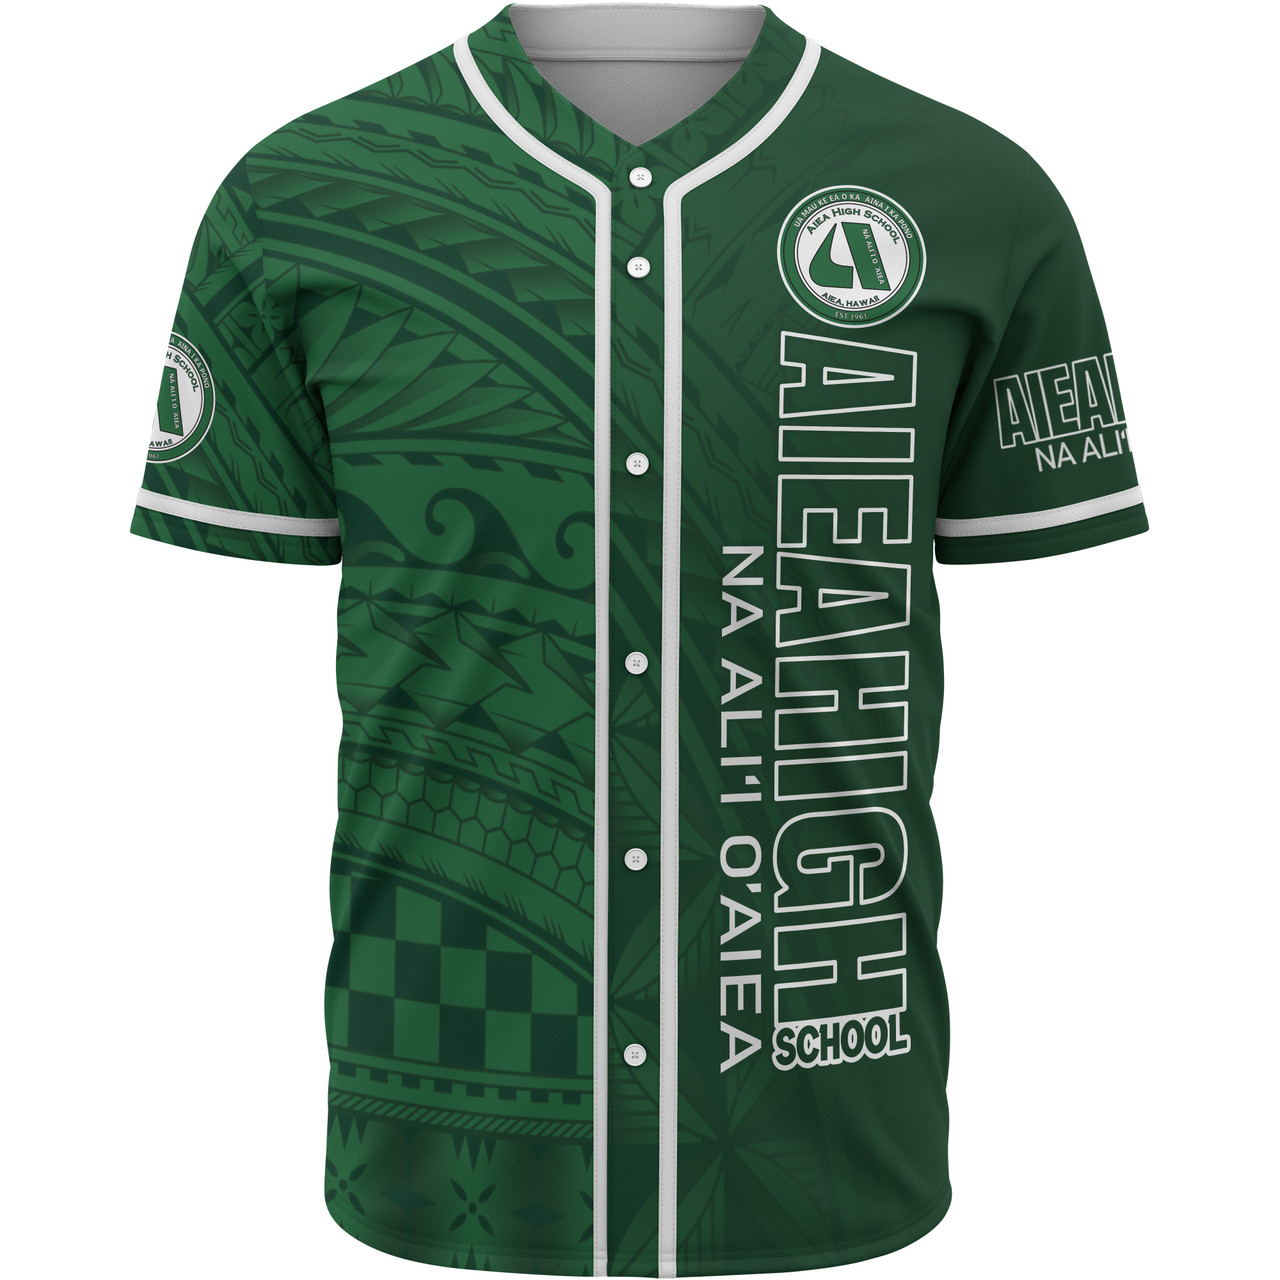 Hawaii Aiea High School Baseball Shirt - Na Ali'i  O'aiea Hawaii Patterns